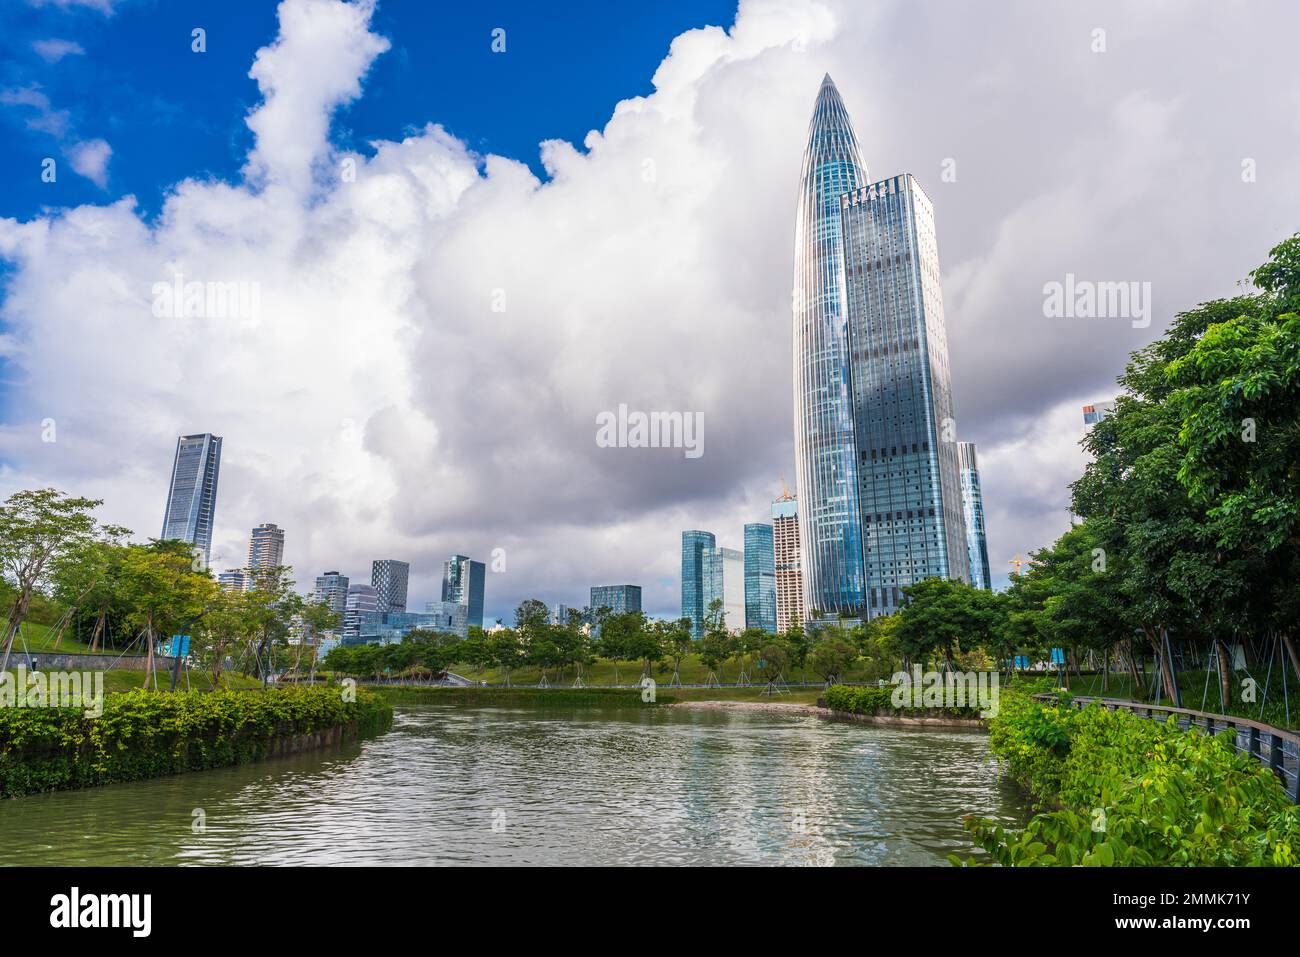 Shenzhen city Stock Photo